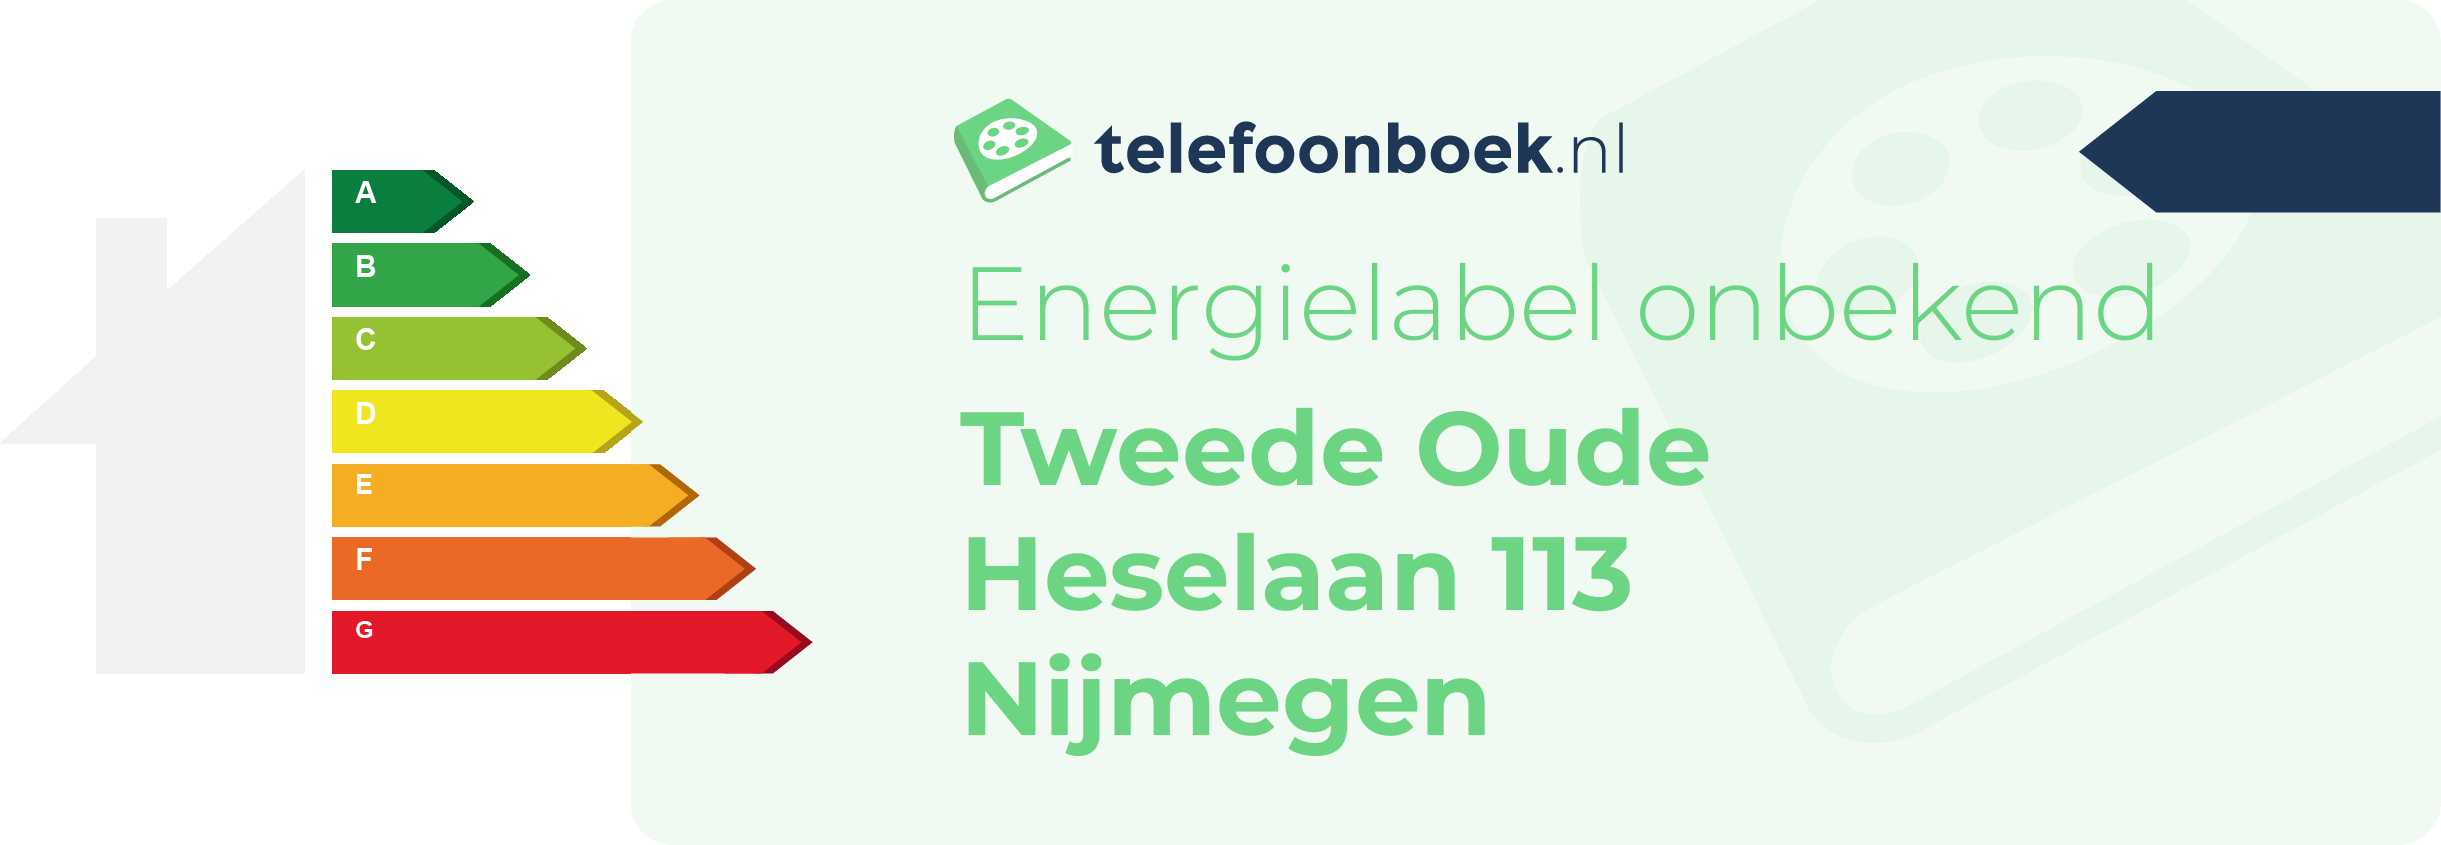 Energielabel Tweede Oude Heselaan 113 Nijmegen